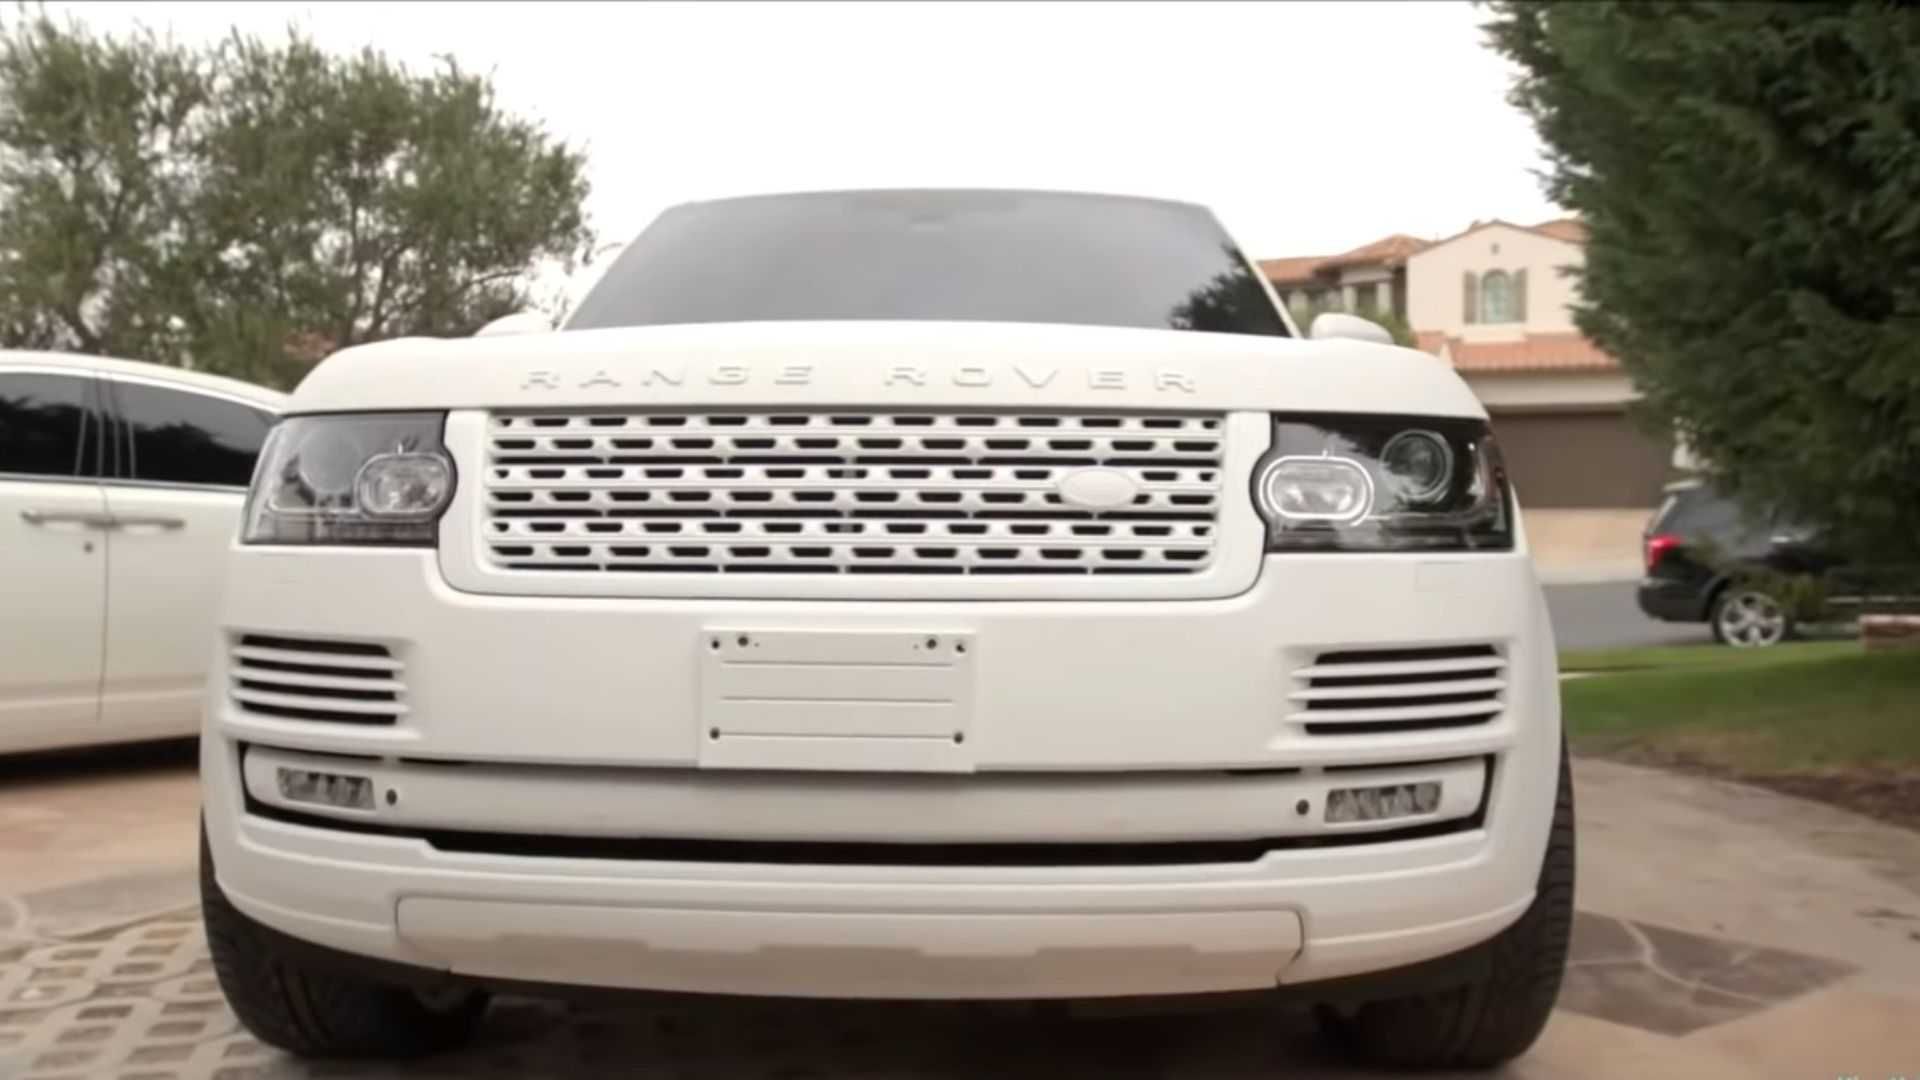 Kylie Jenner Range Rover